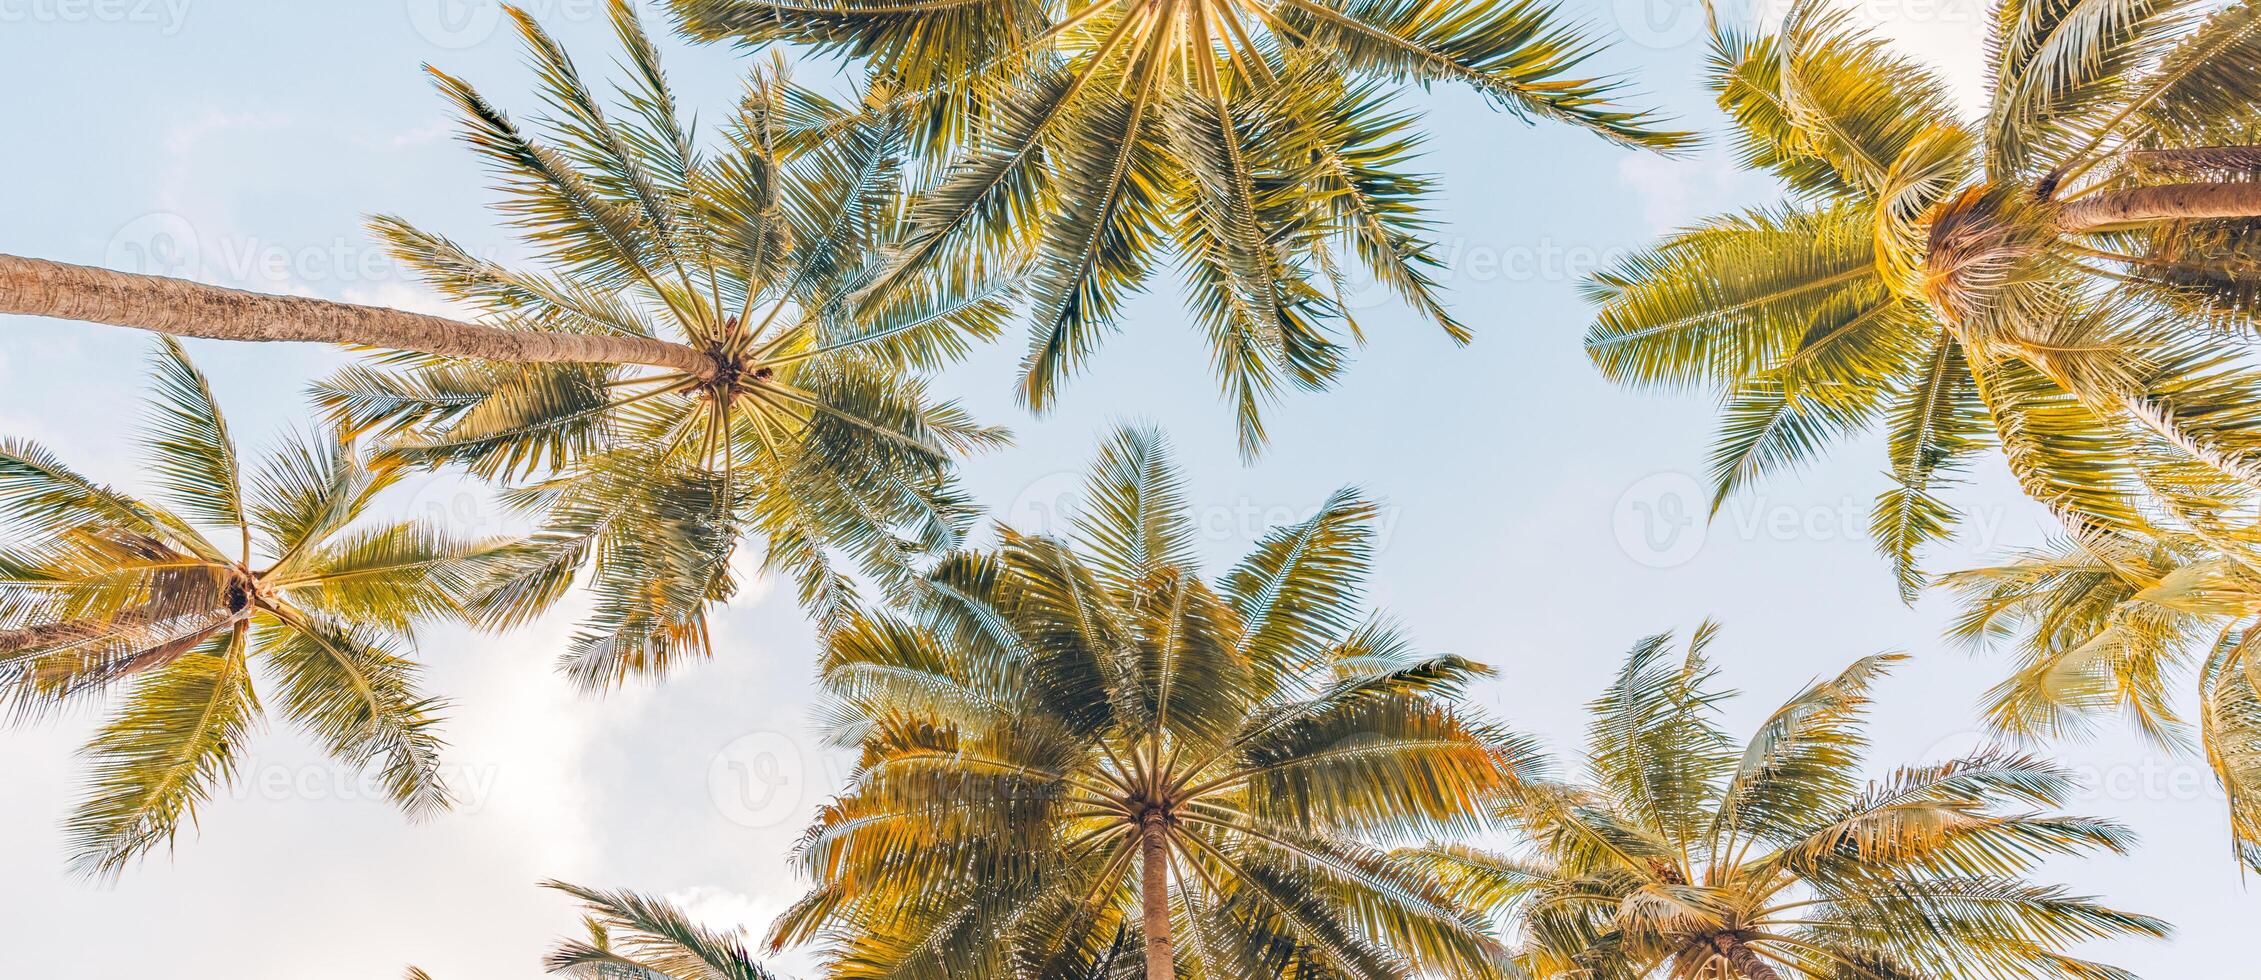 ambiance romantique de palmier tropical avec la lumière du soleil sur fond de ciel. feuillage exotique au coucher du soleil en plein air, paysage naturel en gros plan. cocotiers et soleil brillant sur un ciel lumineux. été printemps nature photo